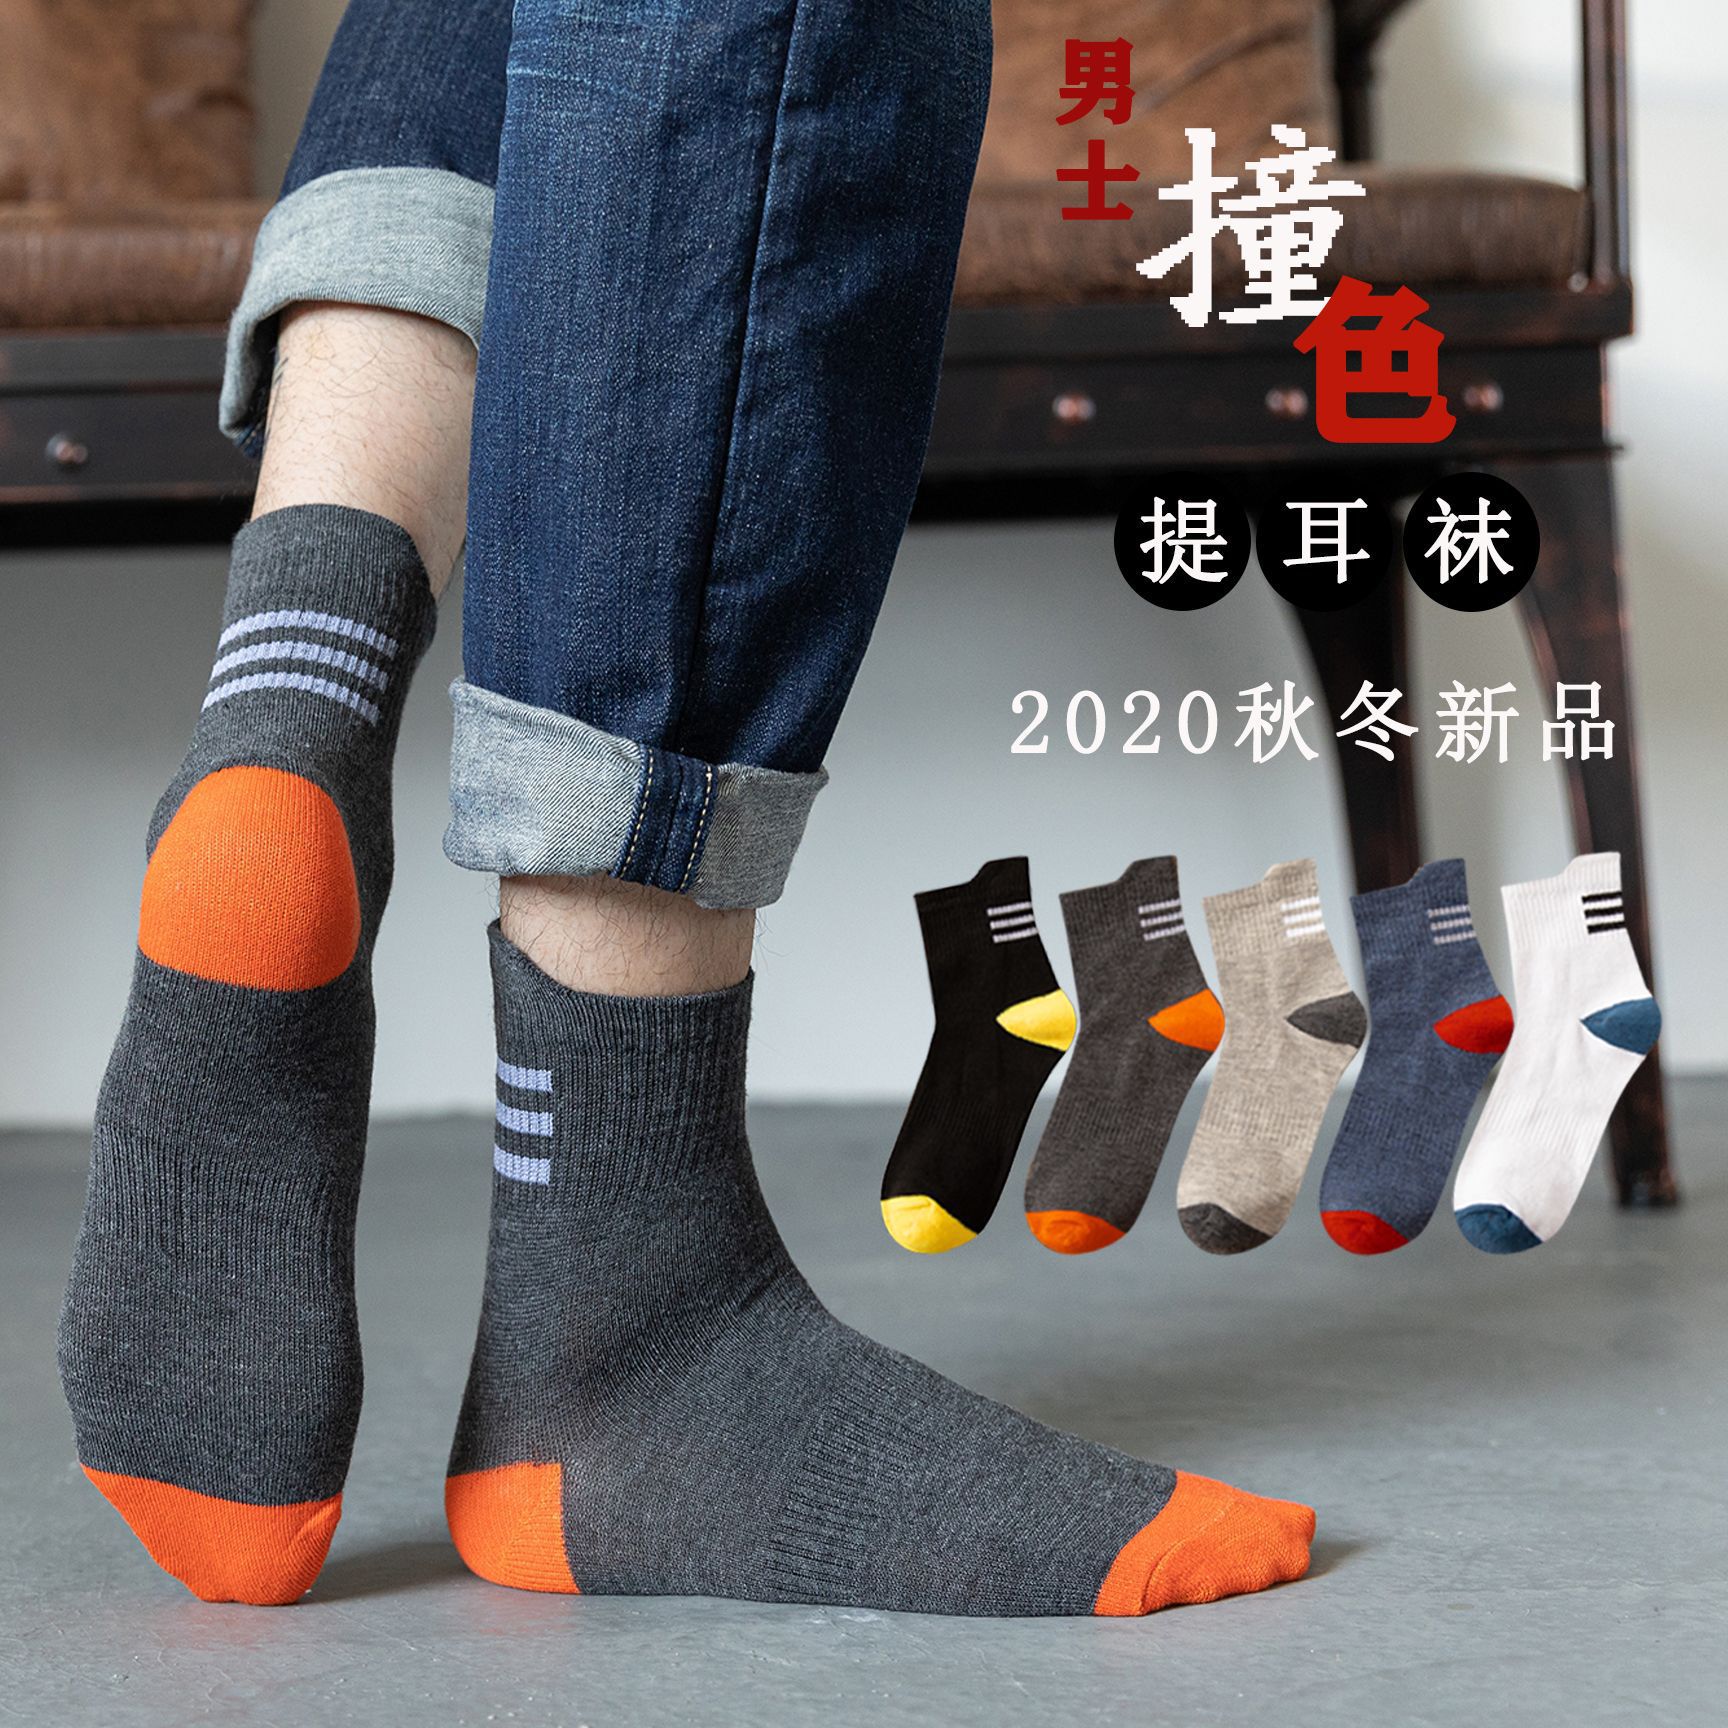 Pure Color Trendy Men's Long Socks Stall Supply Wholesale Sports Socks Men Autumn Mid-Calf Length Men's Socks